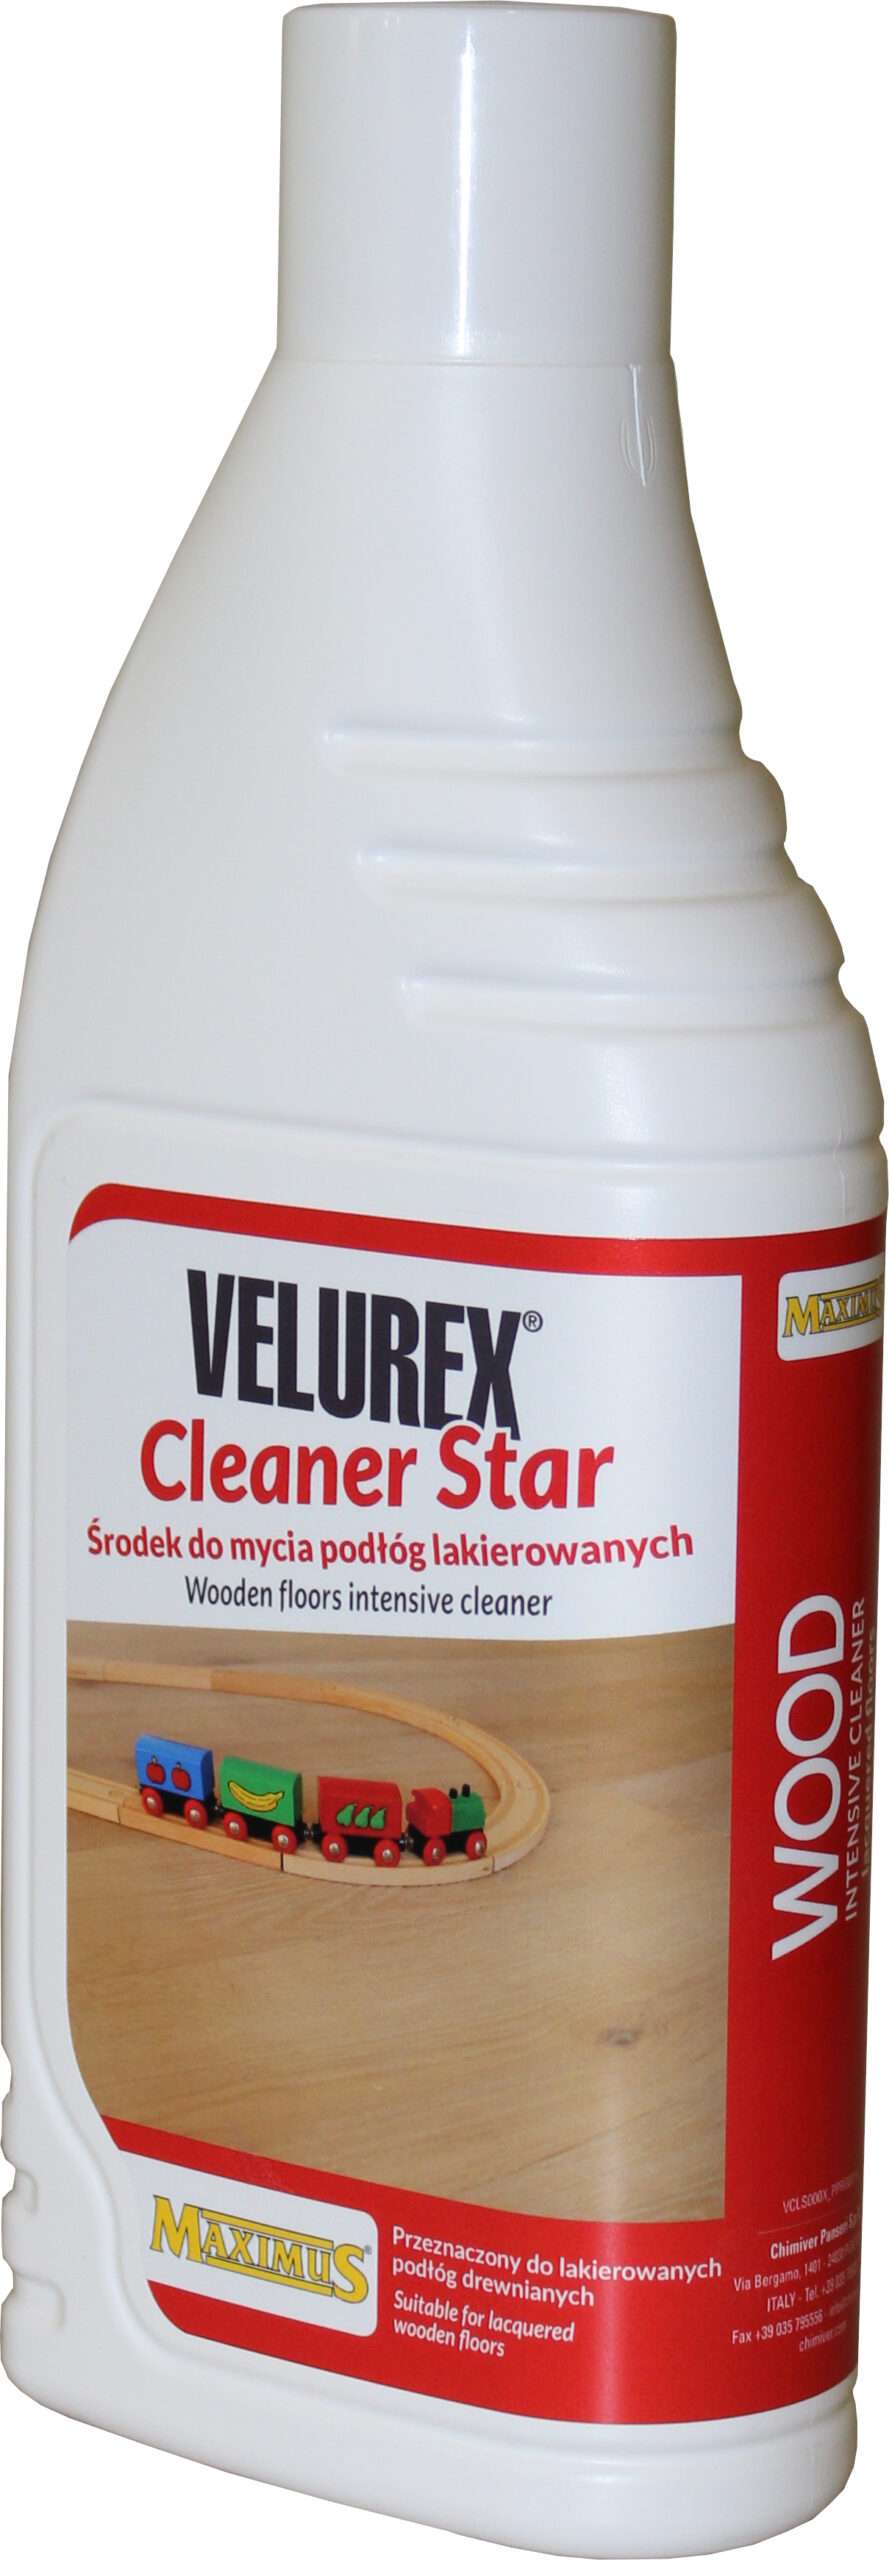 Zmywacz do podłóg lakierowanych Lios Velurex Cleaner Star